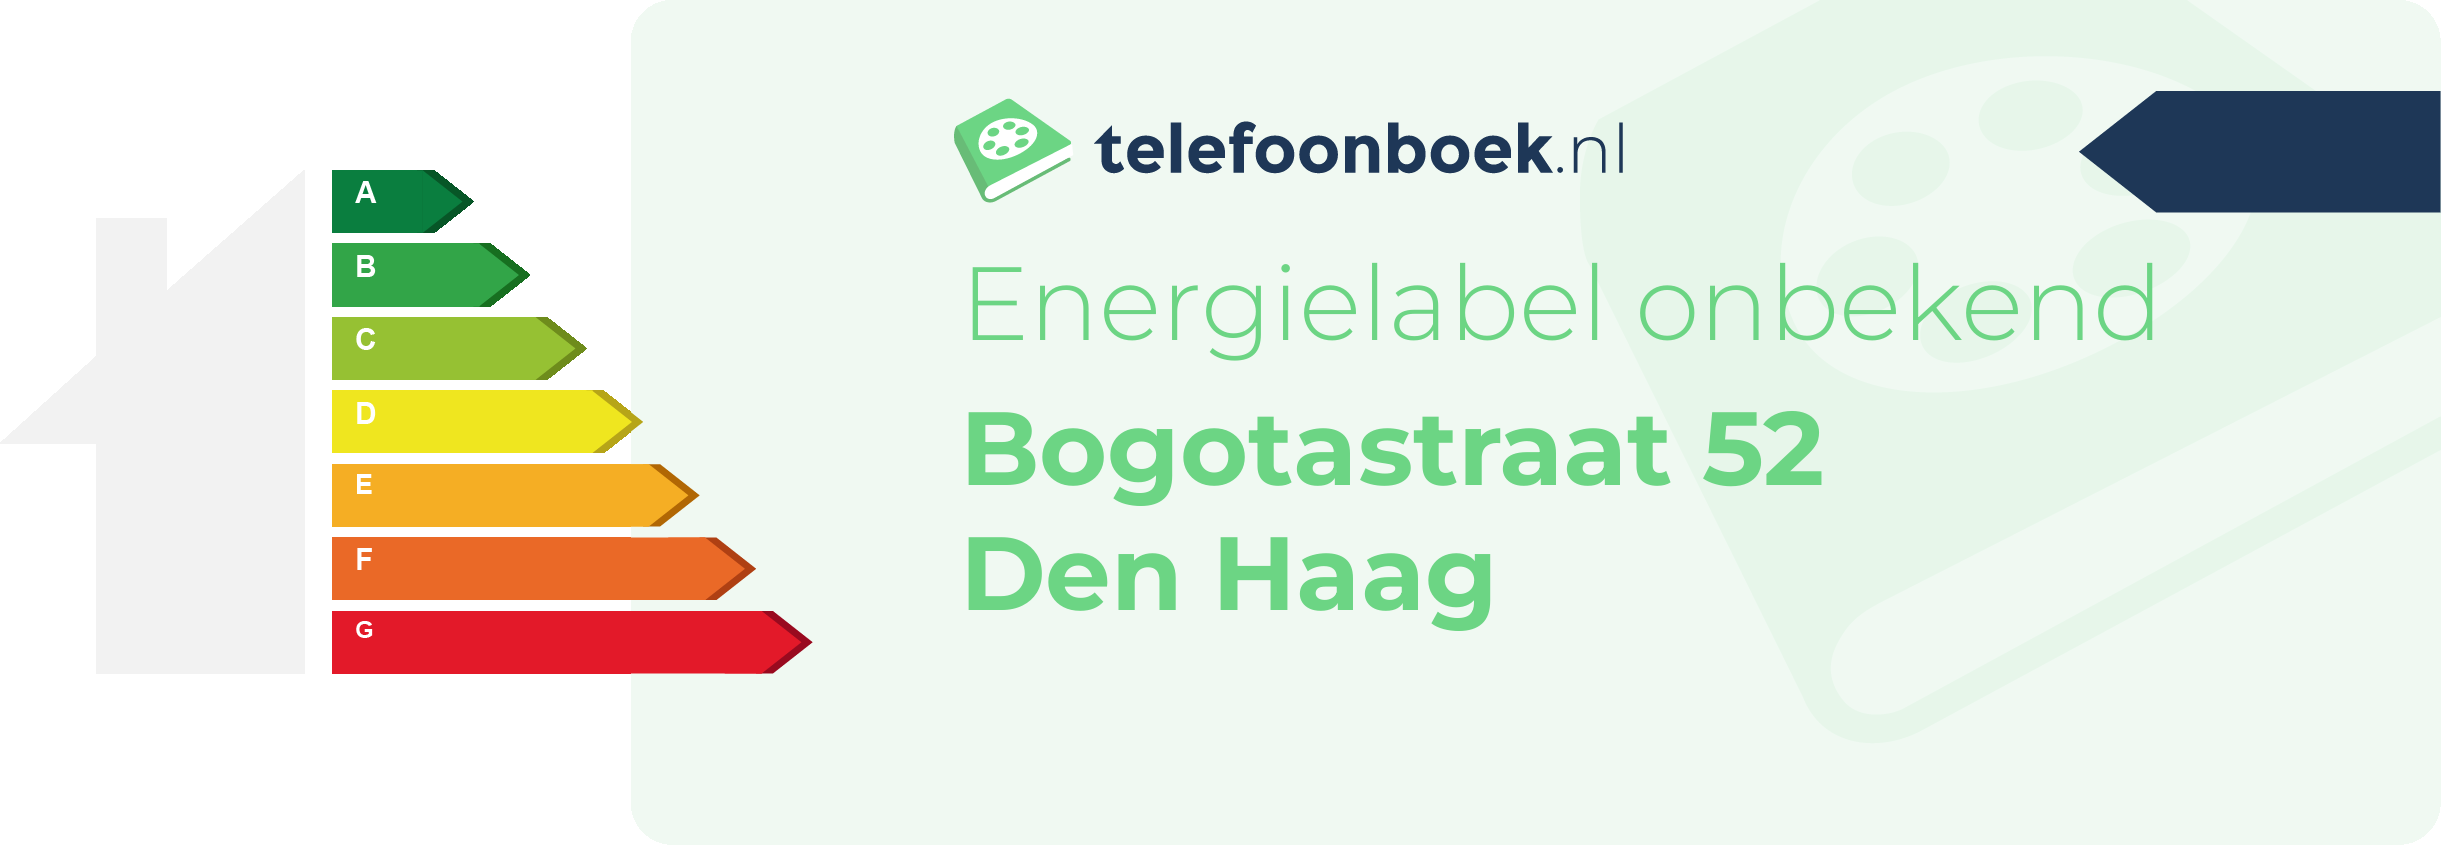 Energielabel Bogotastraat 52 Den Haag